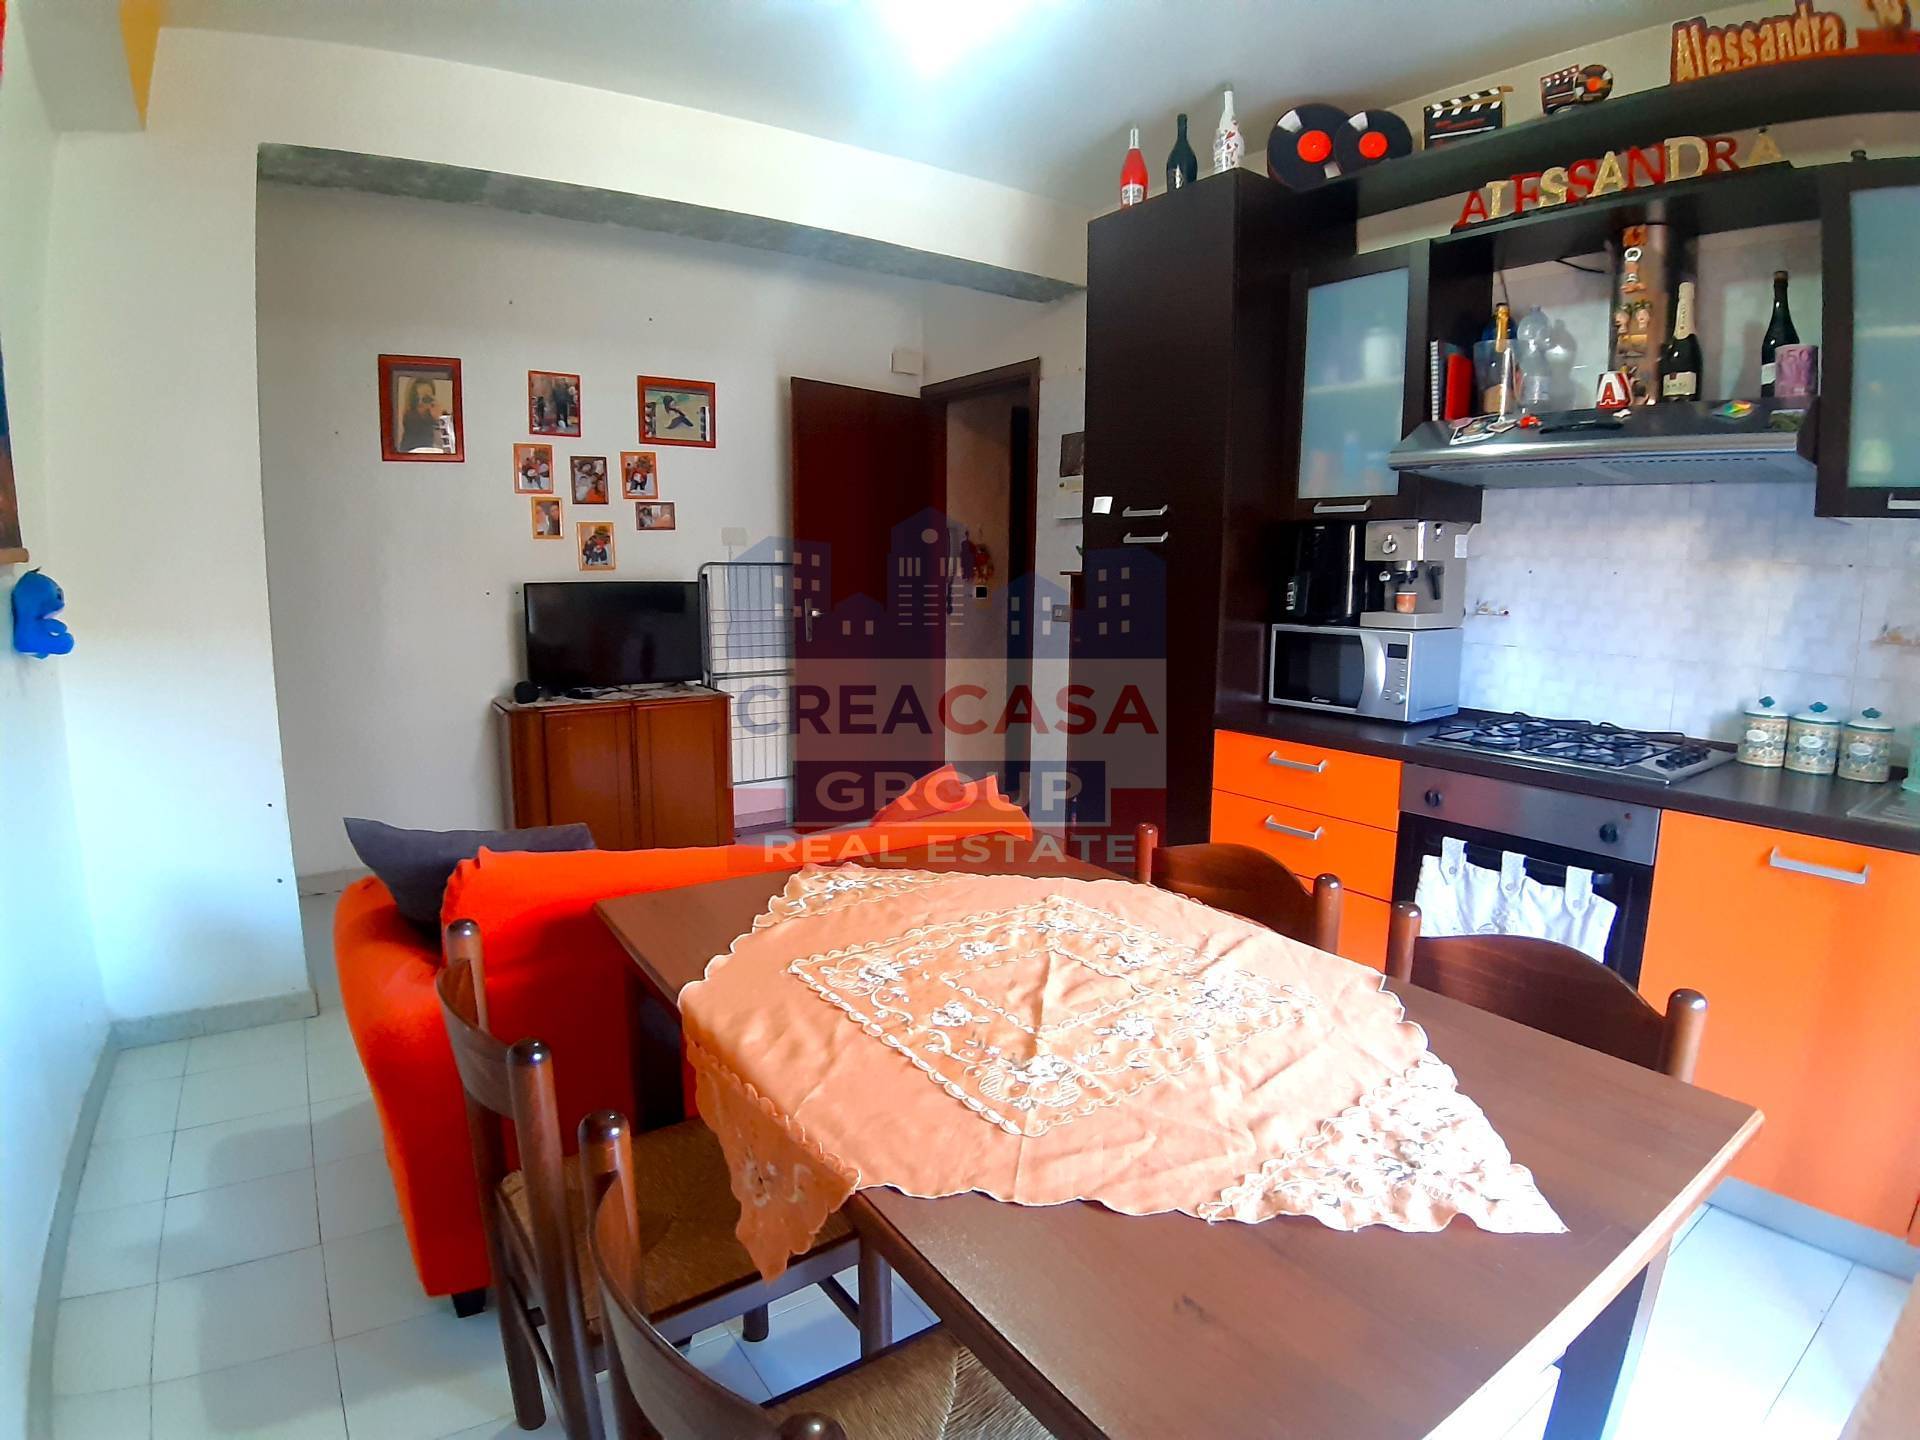 Appartamento in vendita a Giardini-Naxos, 2 locali, zona Località: chianchitta, prezzo € 55.000 | PortaleAgenzieImmobiliari.it